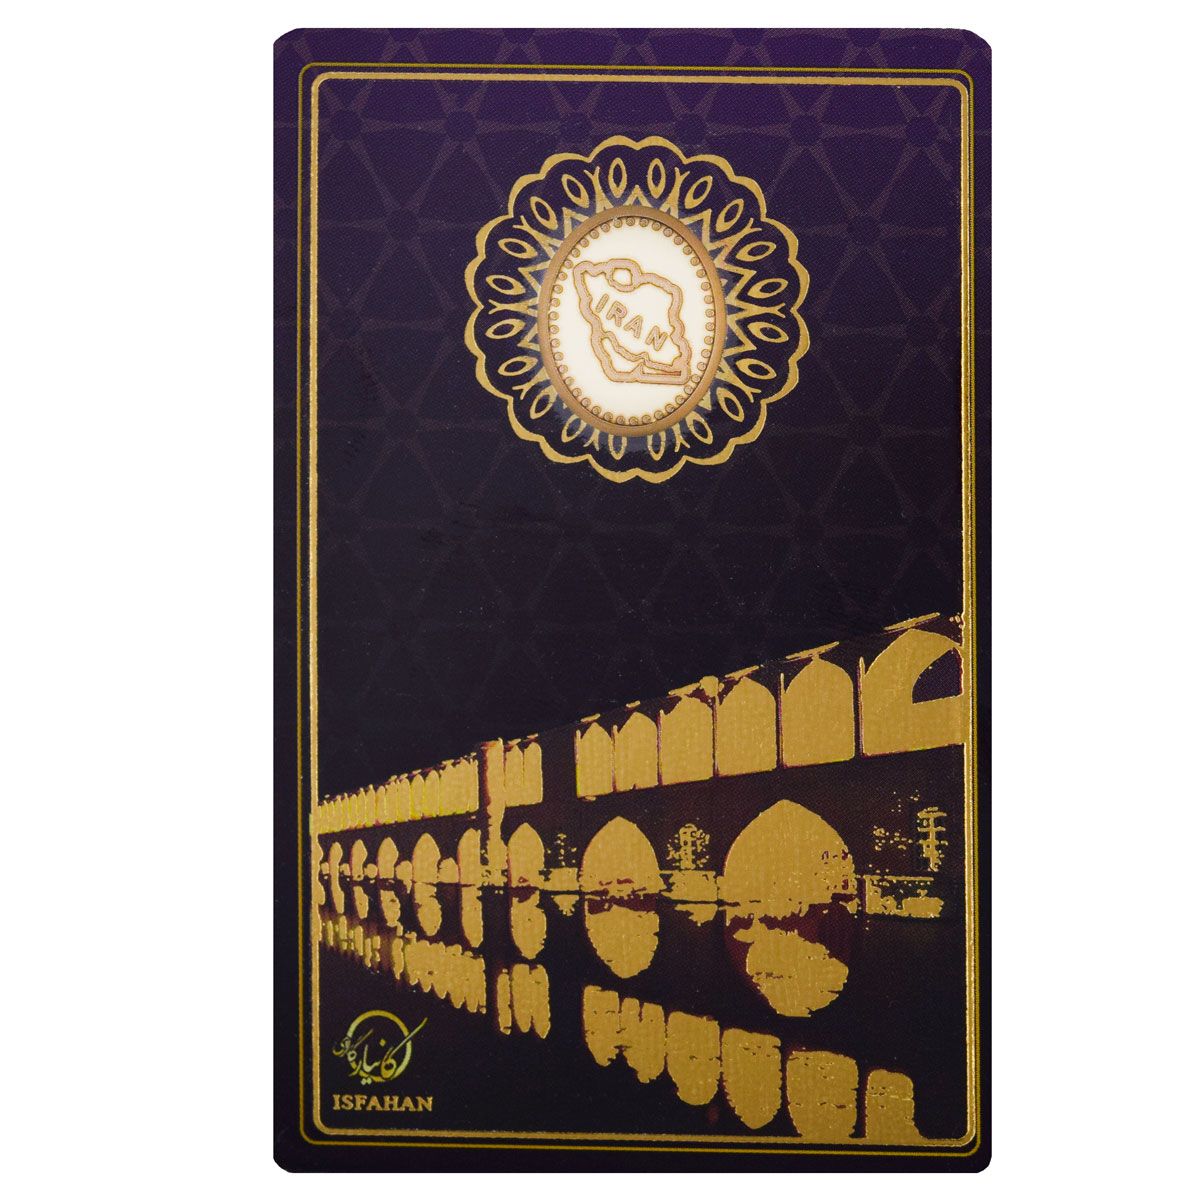  طلا گرمی 18 عیار کانیار گالری طرح سی و سه پل اصفهان کد 88 -  - 1